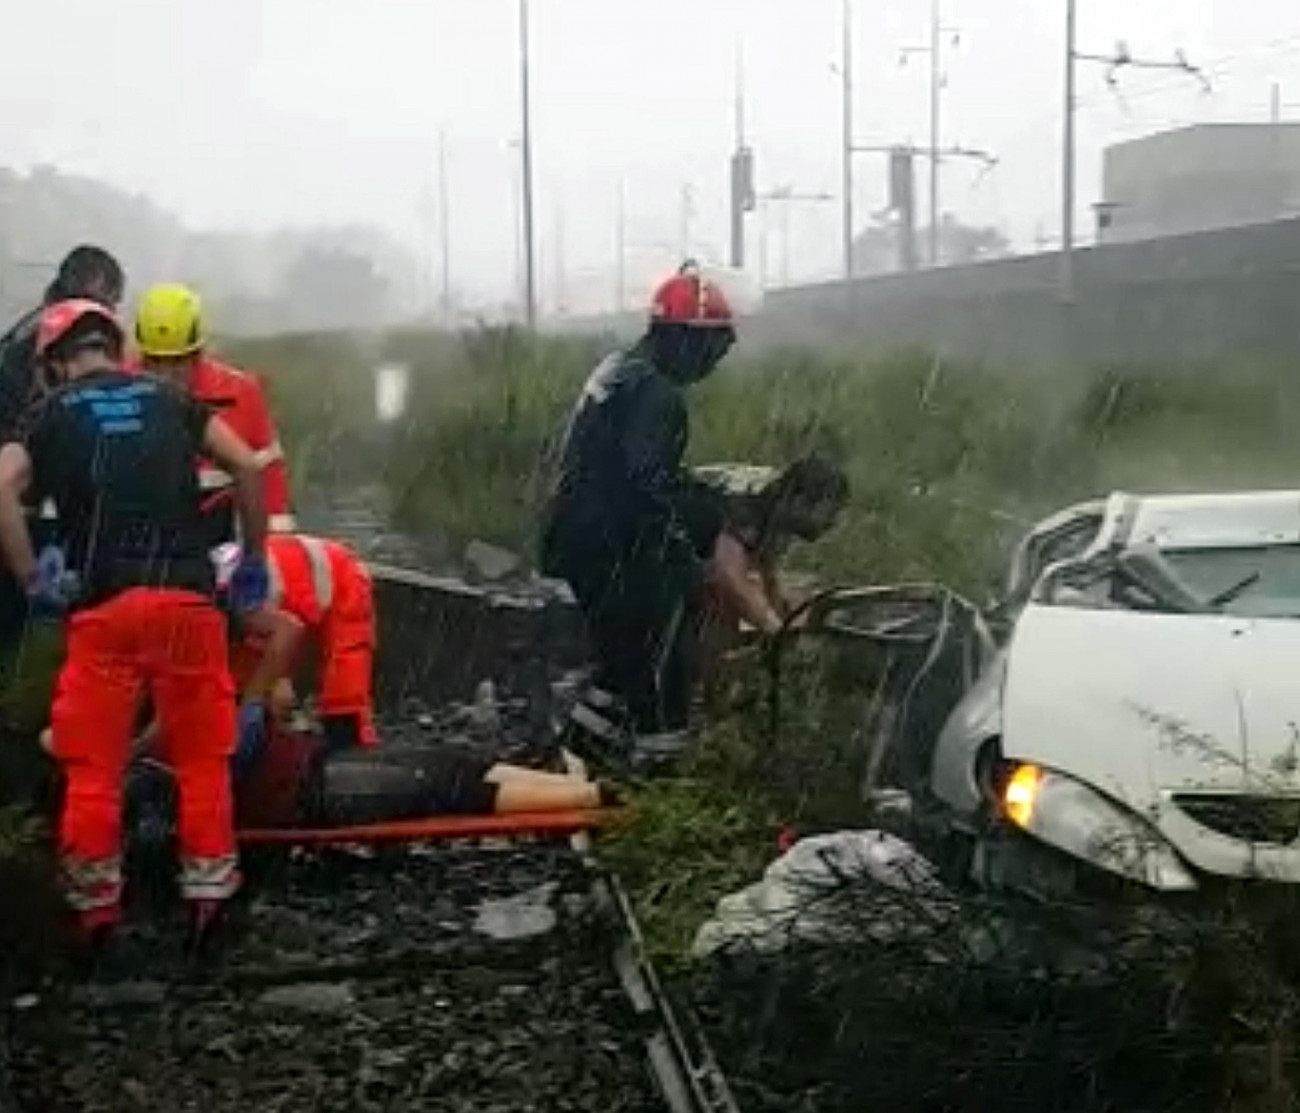 Az olasz tűzoltóság által közreadott képen a mentőalakulatok dolgoznak a baleset helyszínén Genova közelében, miután leszakadt az A10-es autópálya egyik hídjának egy része. A balesetnek több tucat halottja van. (MTI/EPA/Olasz tűzoltóság)